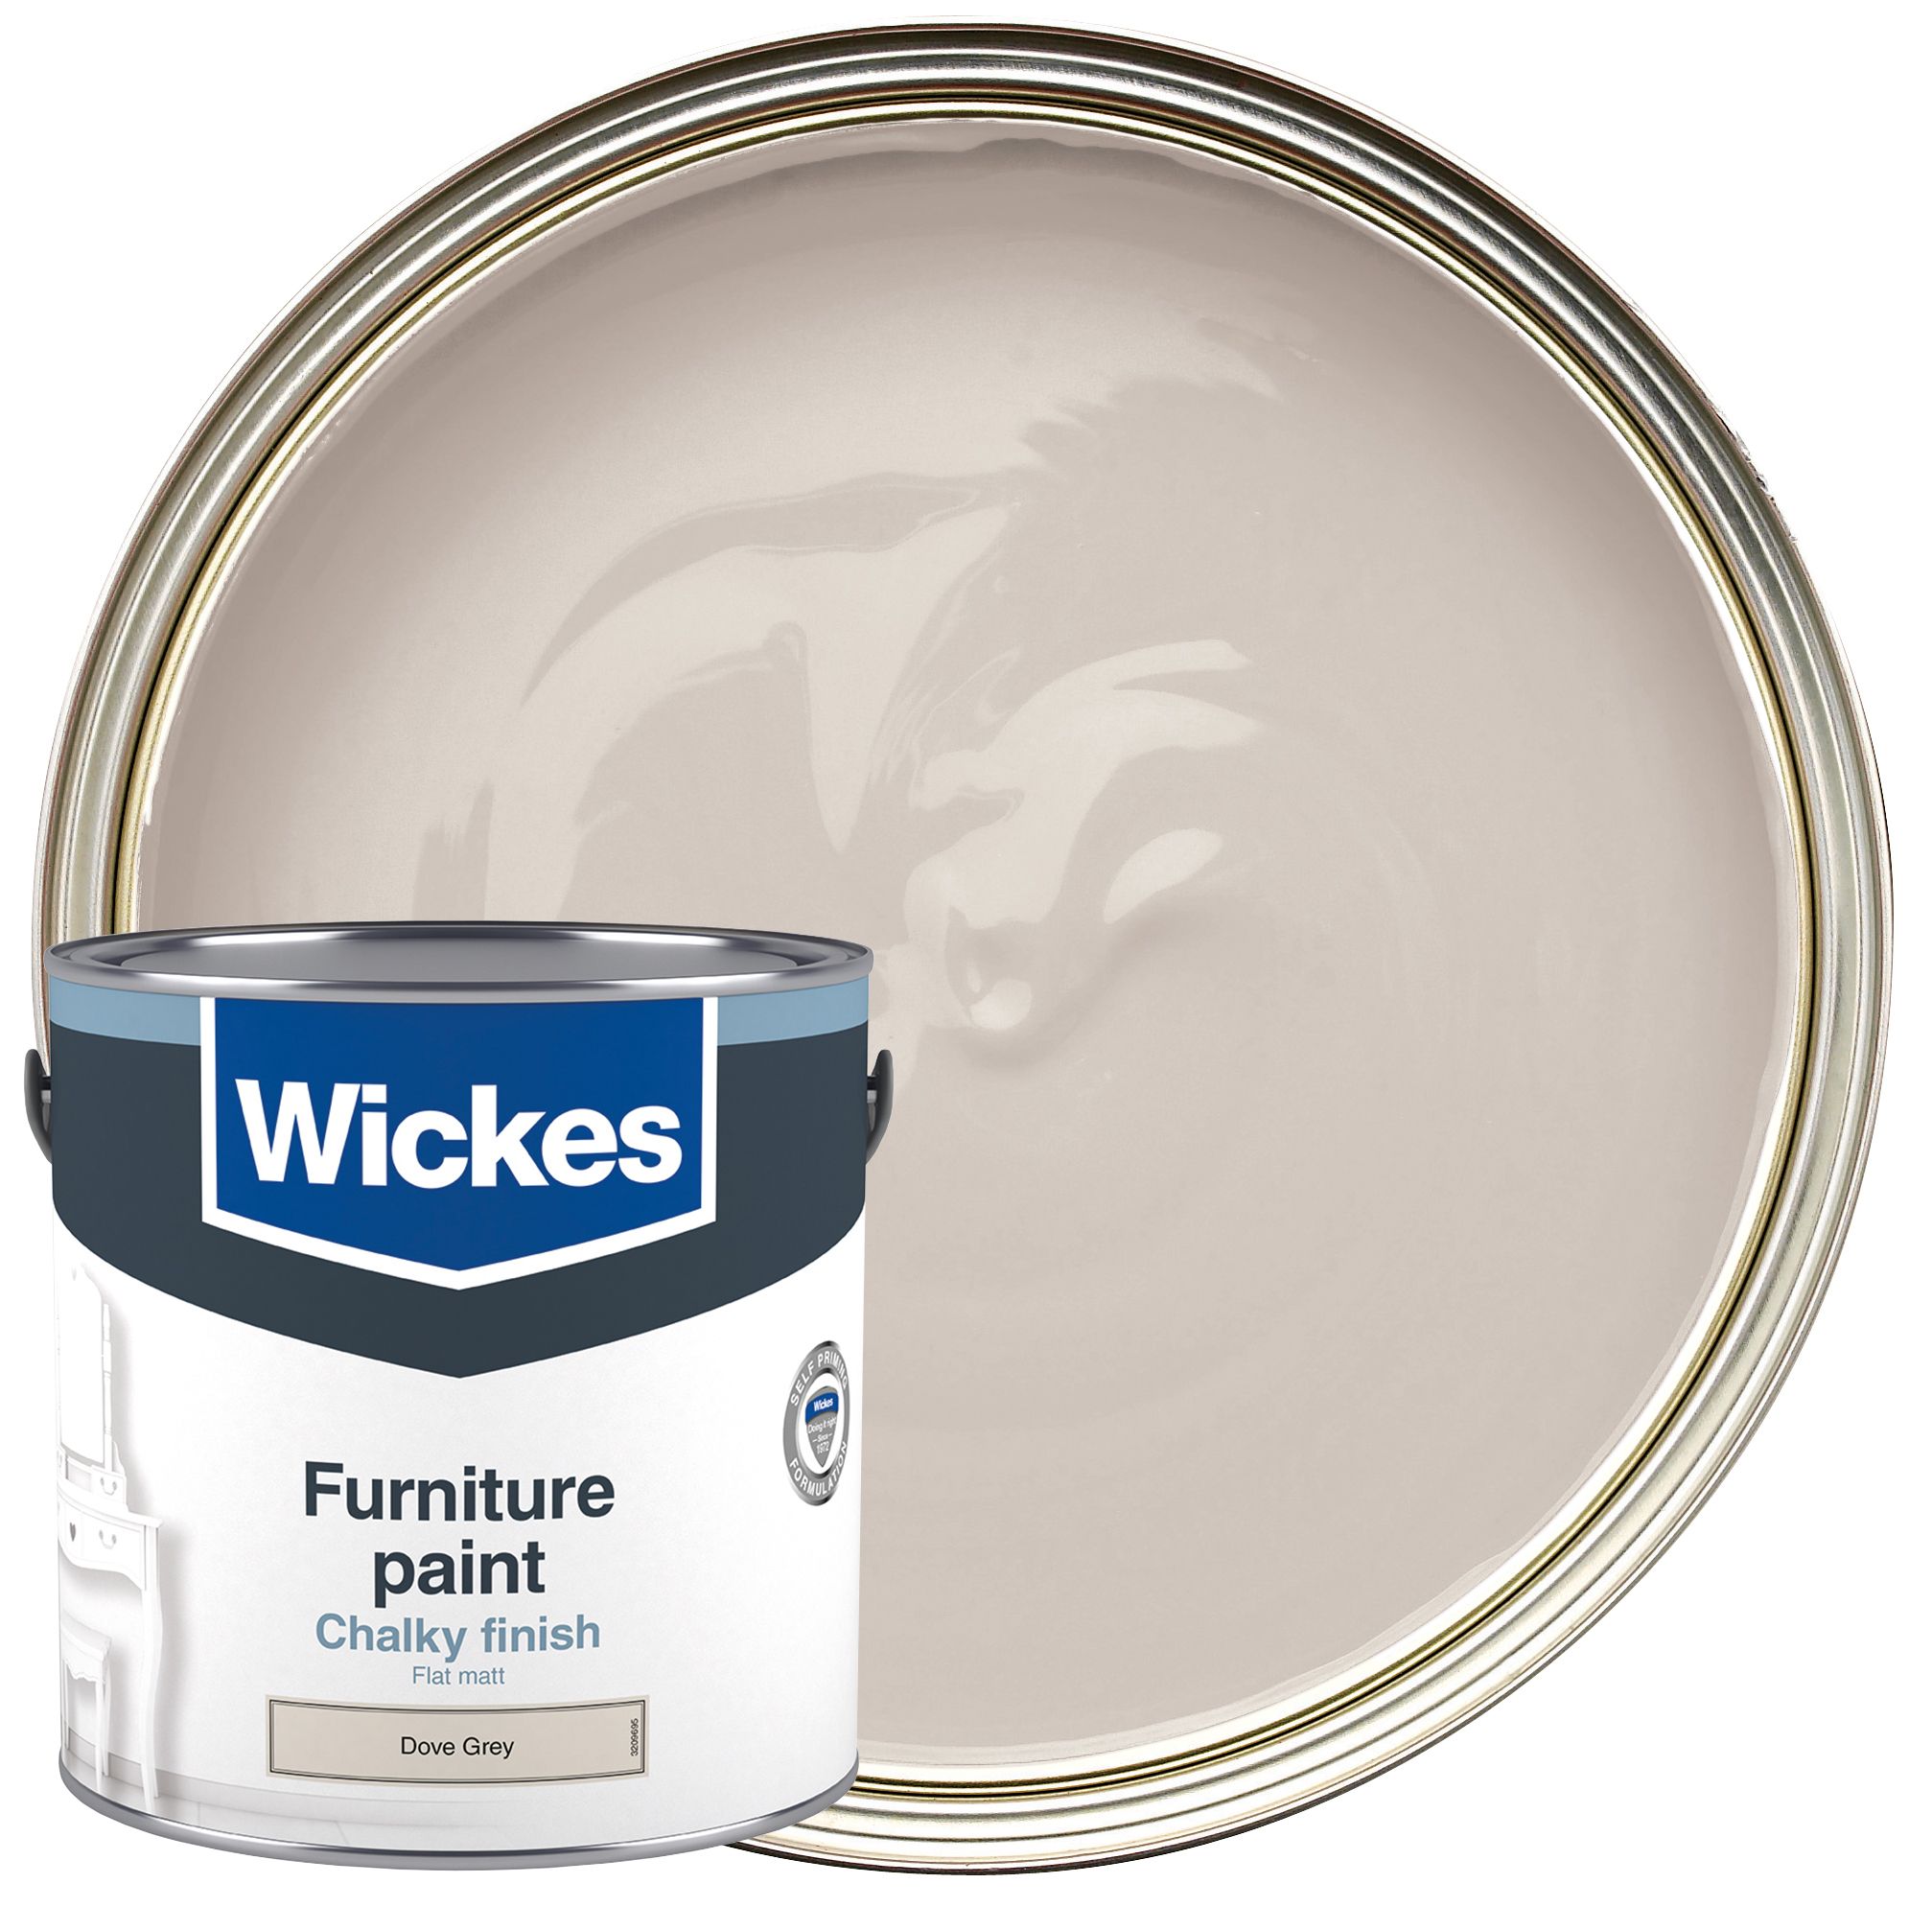 Image of Wickes Flat Matt Furniture Paint - Dove Grey - 2.5L